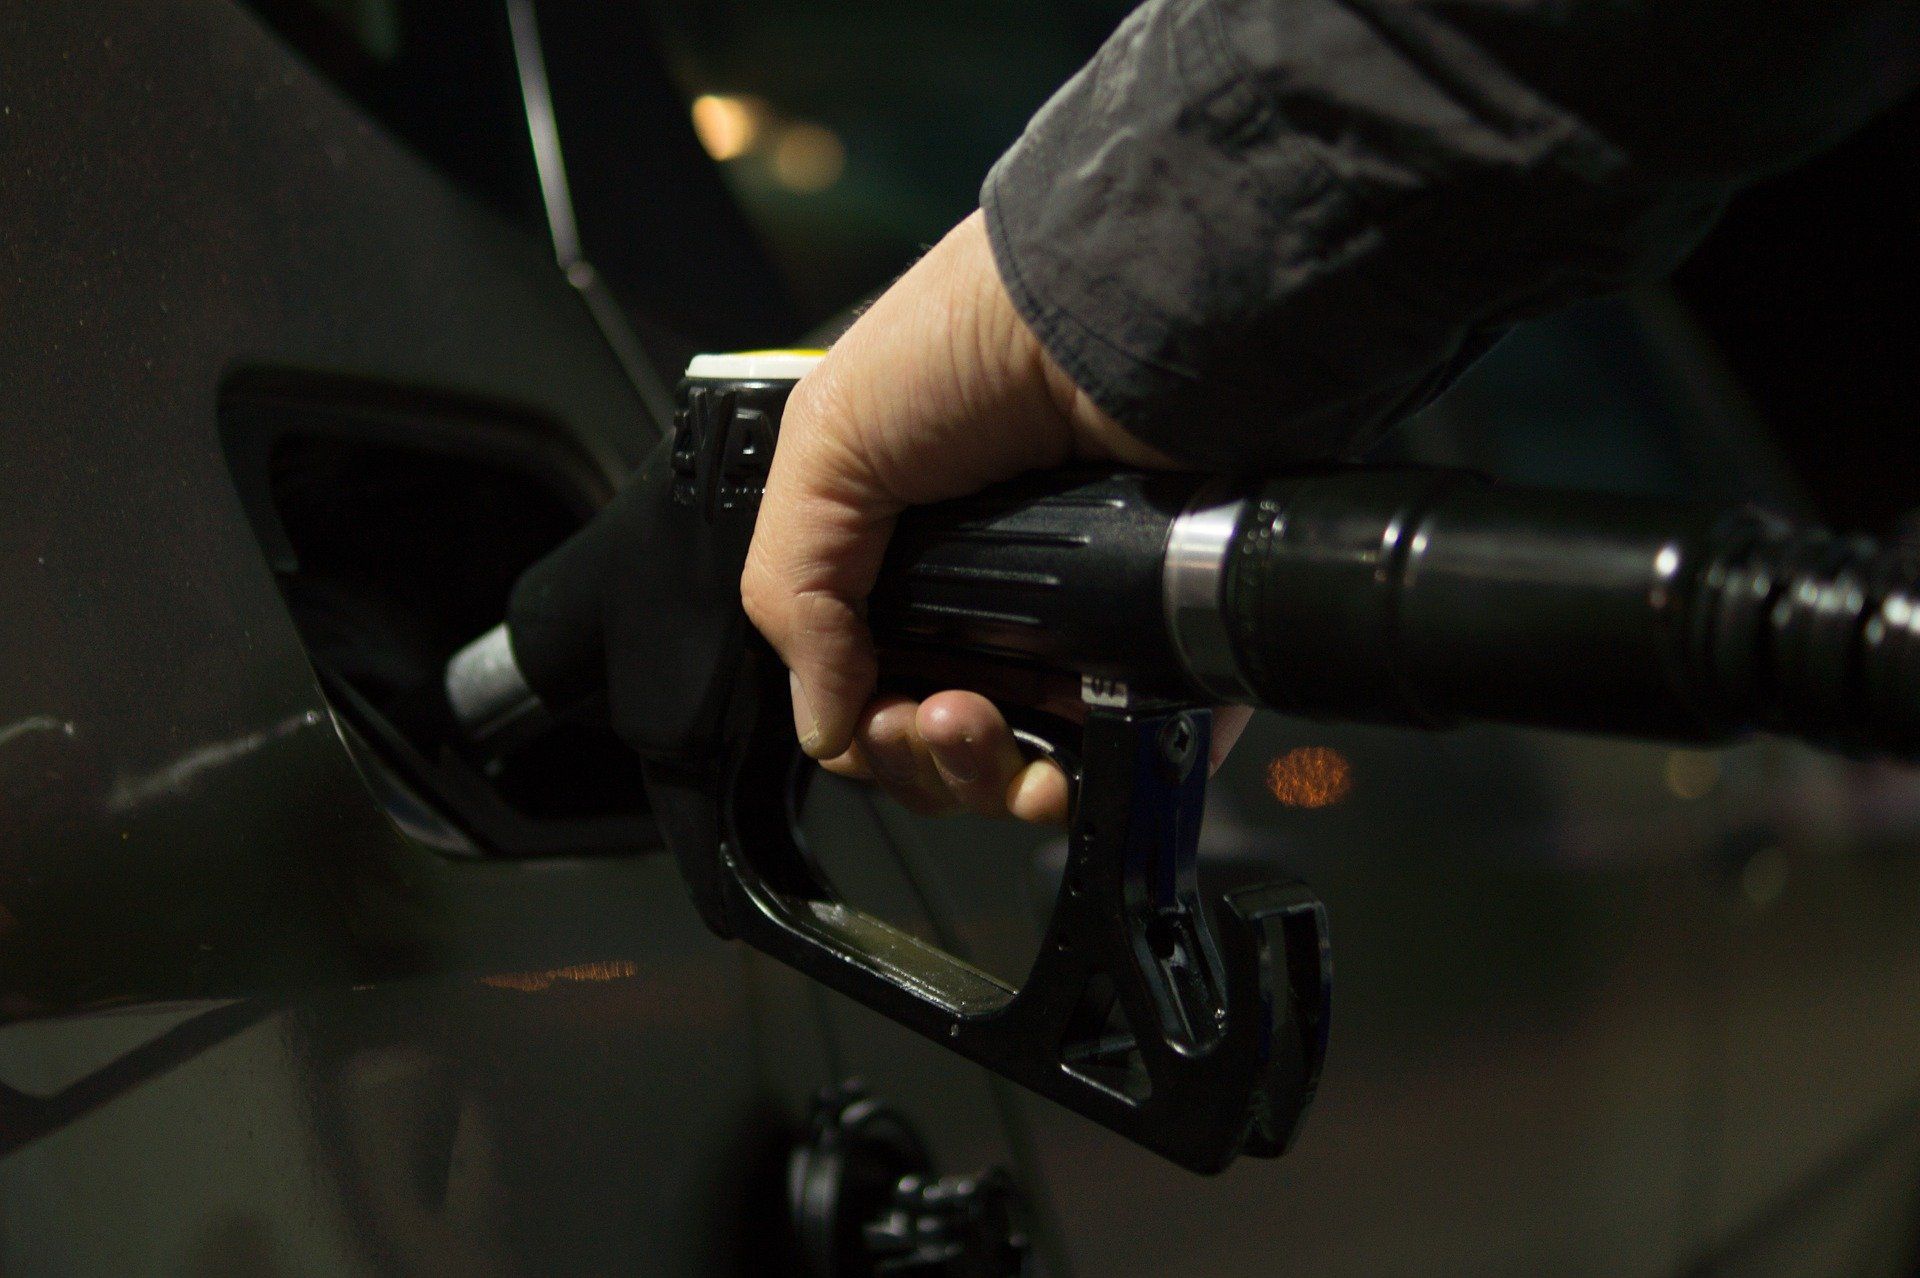 Fuel price July 7, 2022: Petrol Rs 96.72, diesel Rs 89.62 in Delhi